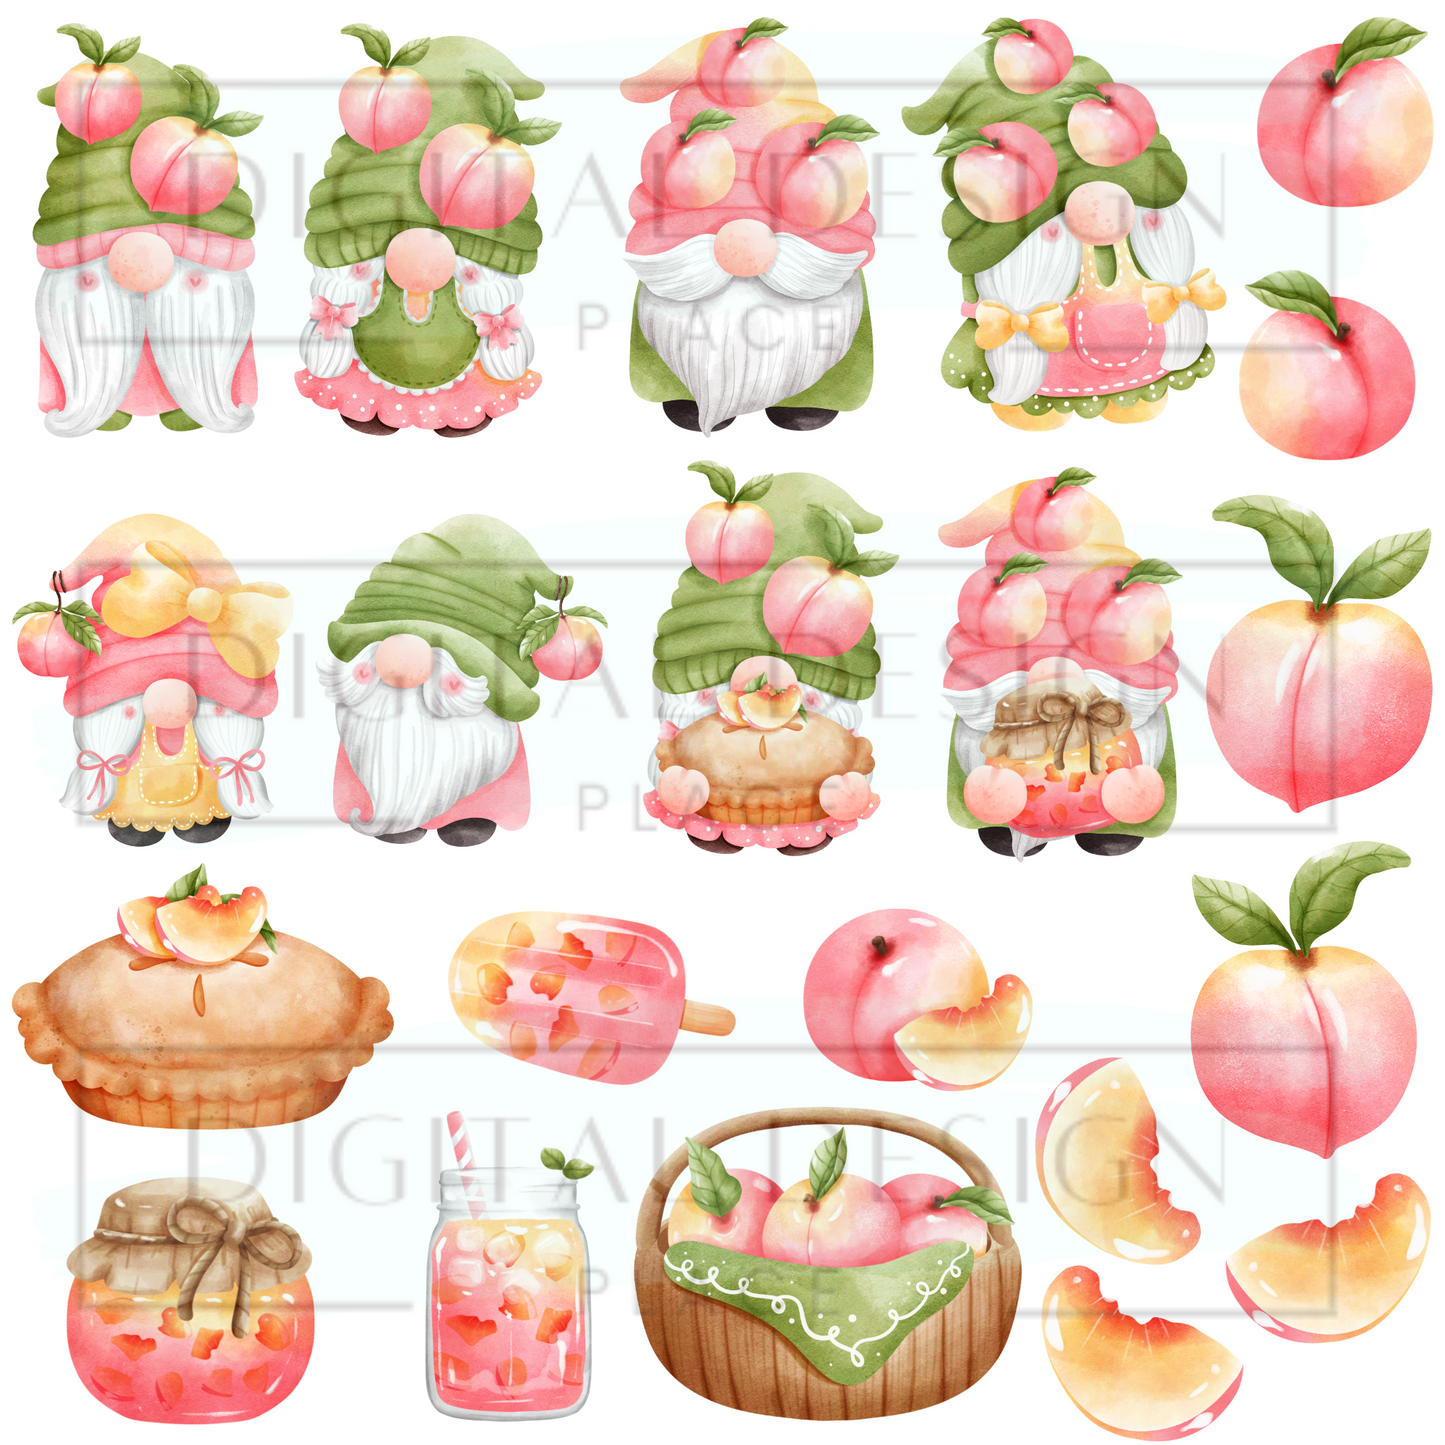 Peach Gnomes EleE108